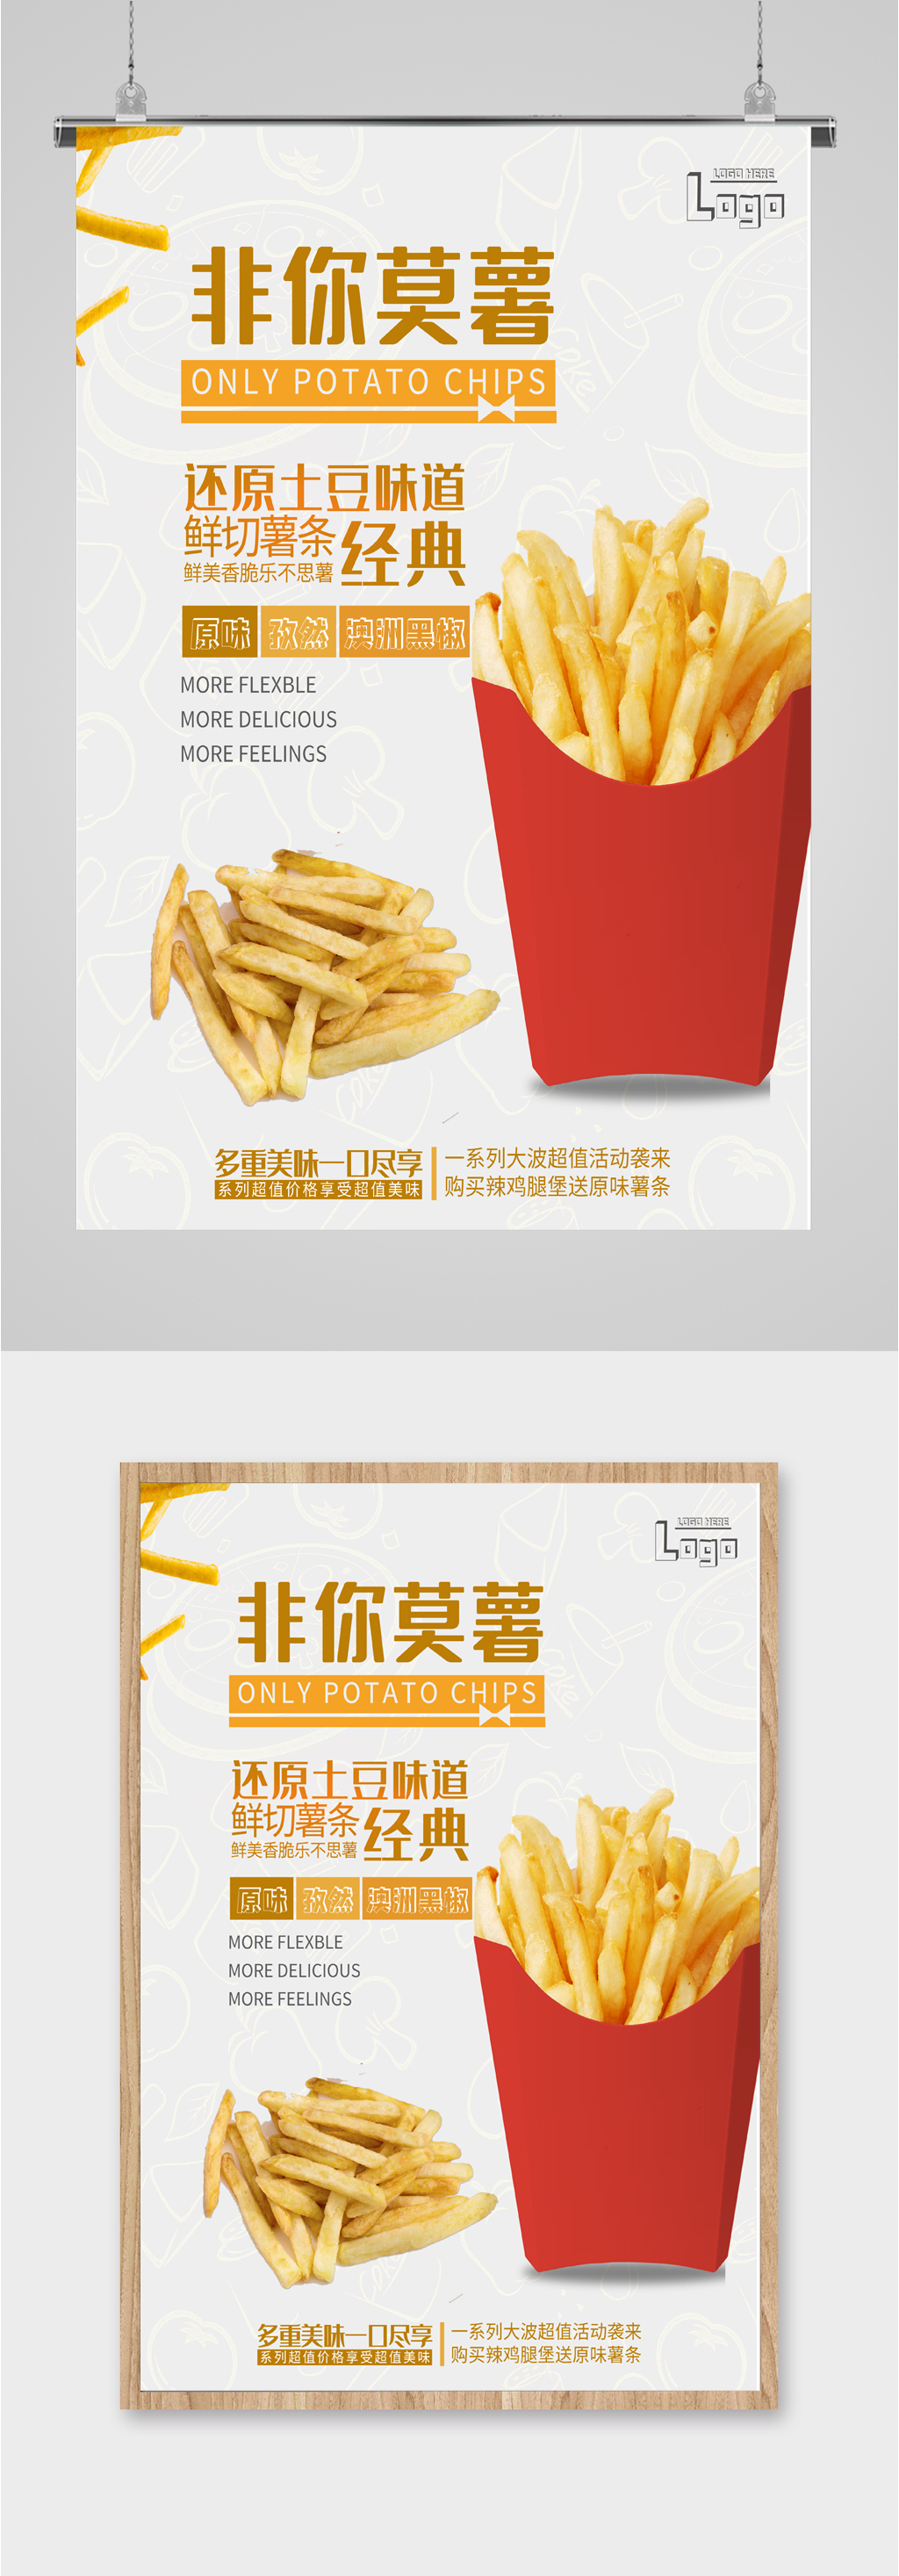 汉堡薯条美食海报素材免费下载,本作品是由潜力股上传的原创平面广告